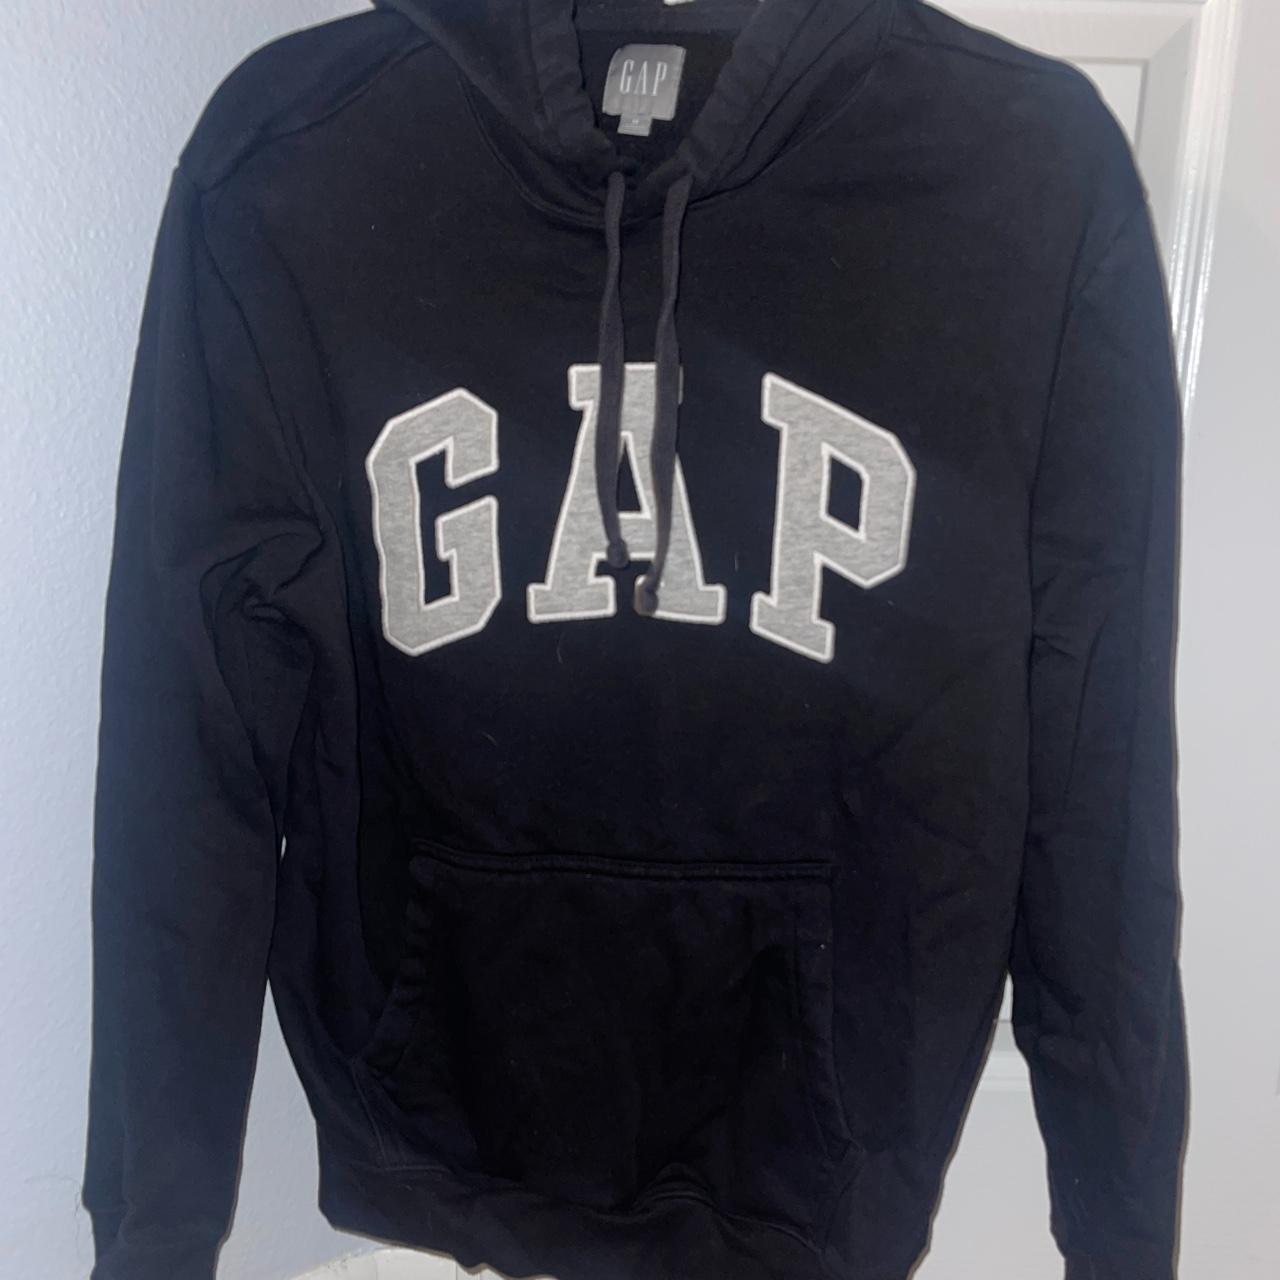 Black gap hoodie worn twice #gap - Depop